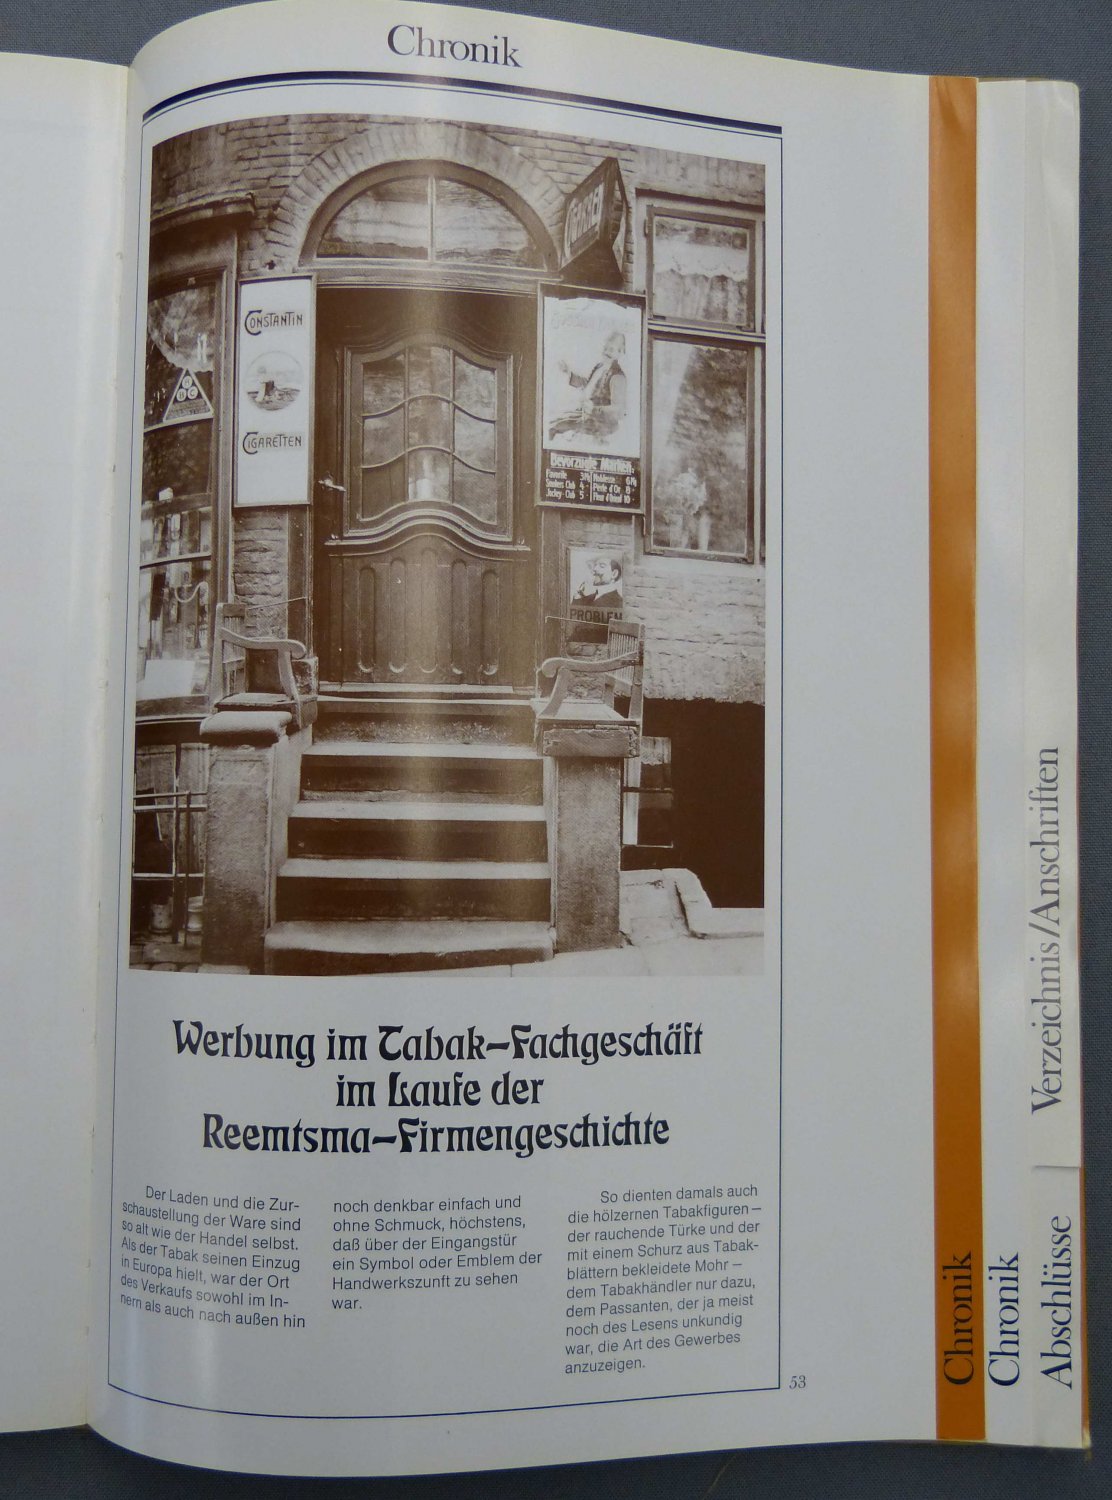 REEMTSMA CIGARETTENFABRIKEN GmbH HAMBURG:  Reemtsma Geschäftsbericht 1977. (Darin: Werbung im Tabak-Fachgeschäft im Laufe der Reemtsma-Firmengeschichte.) 